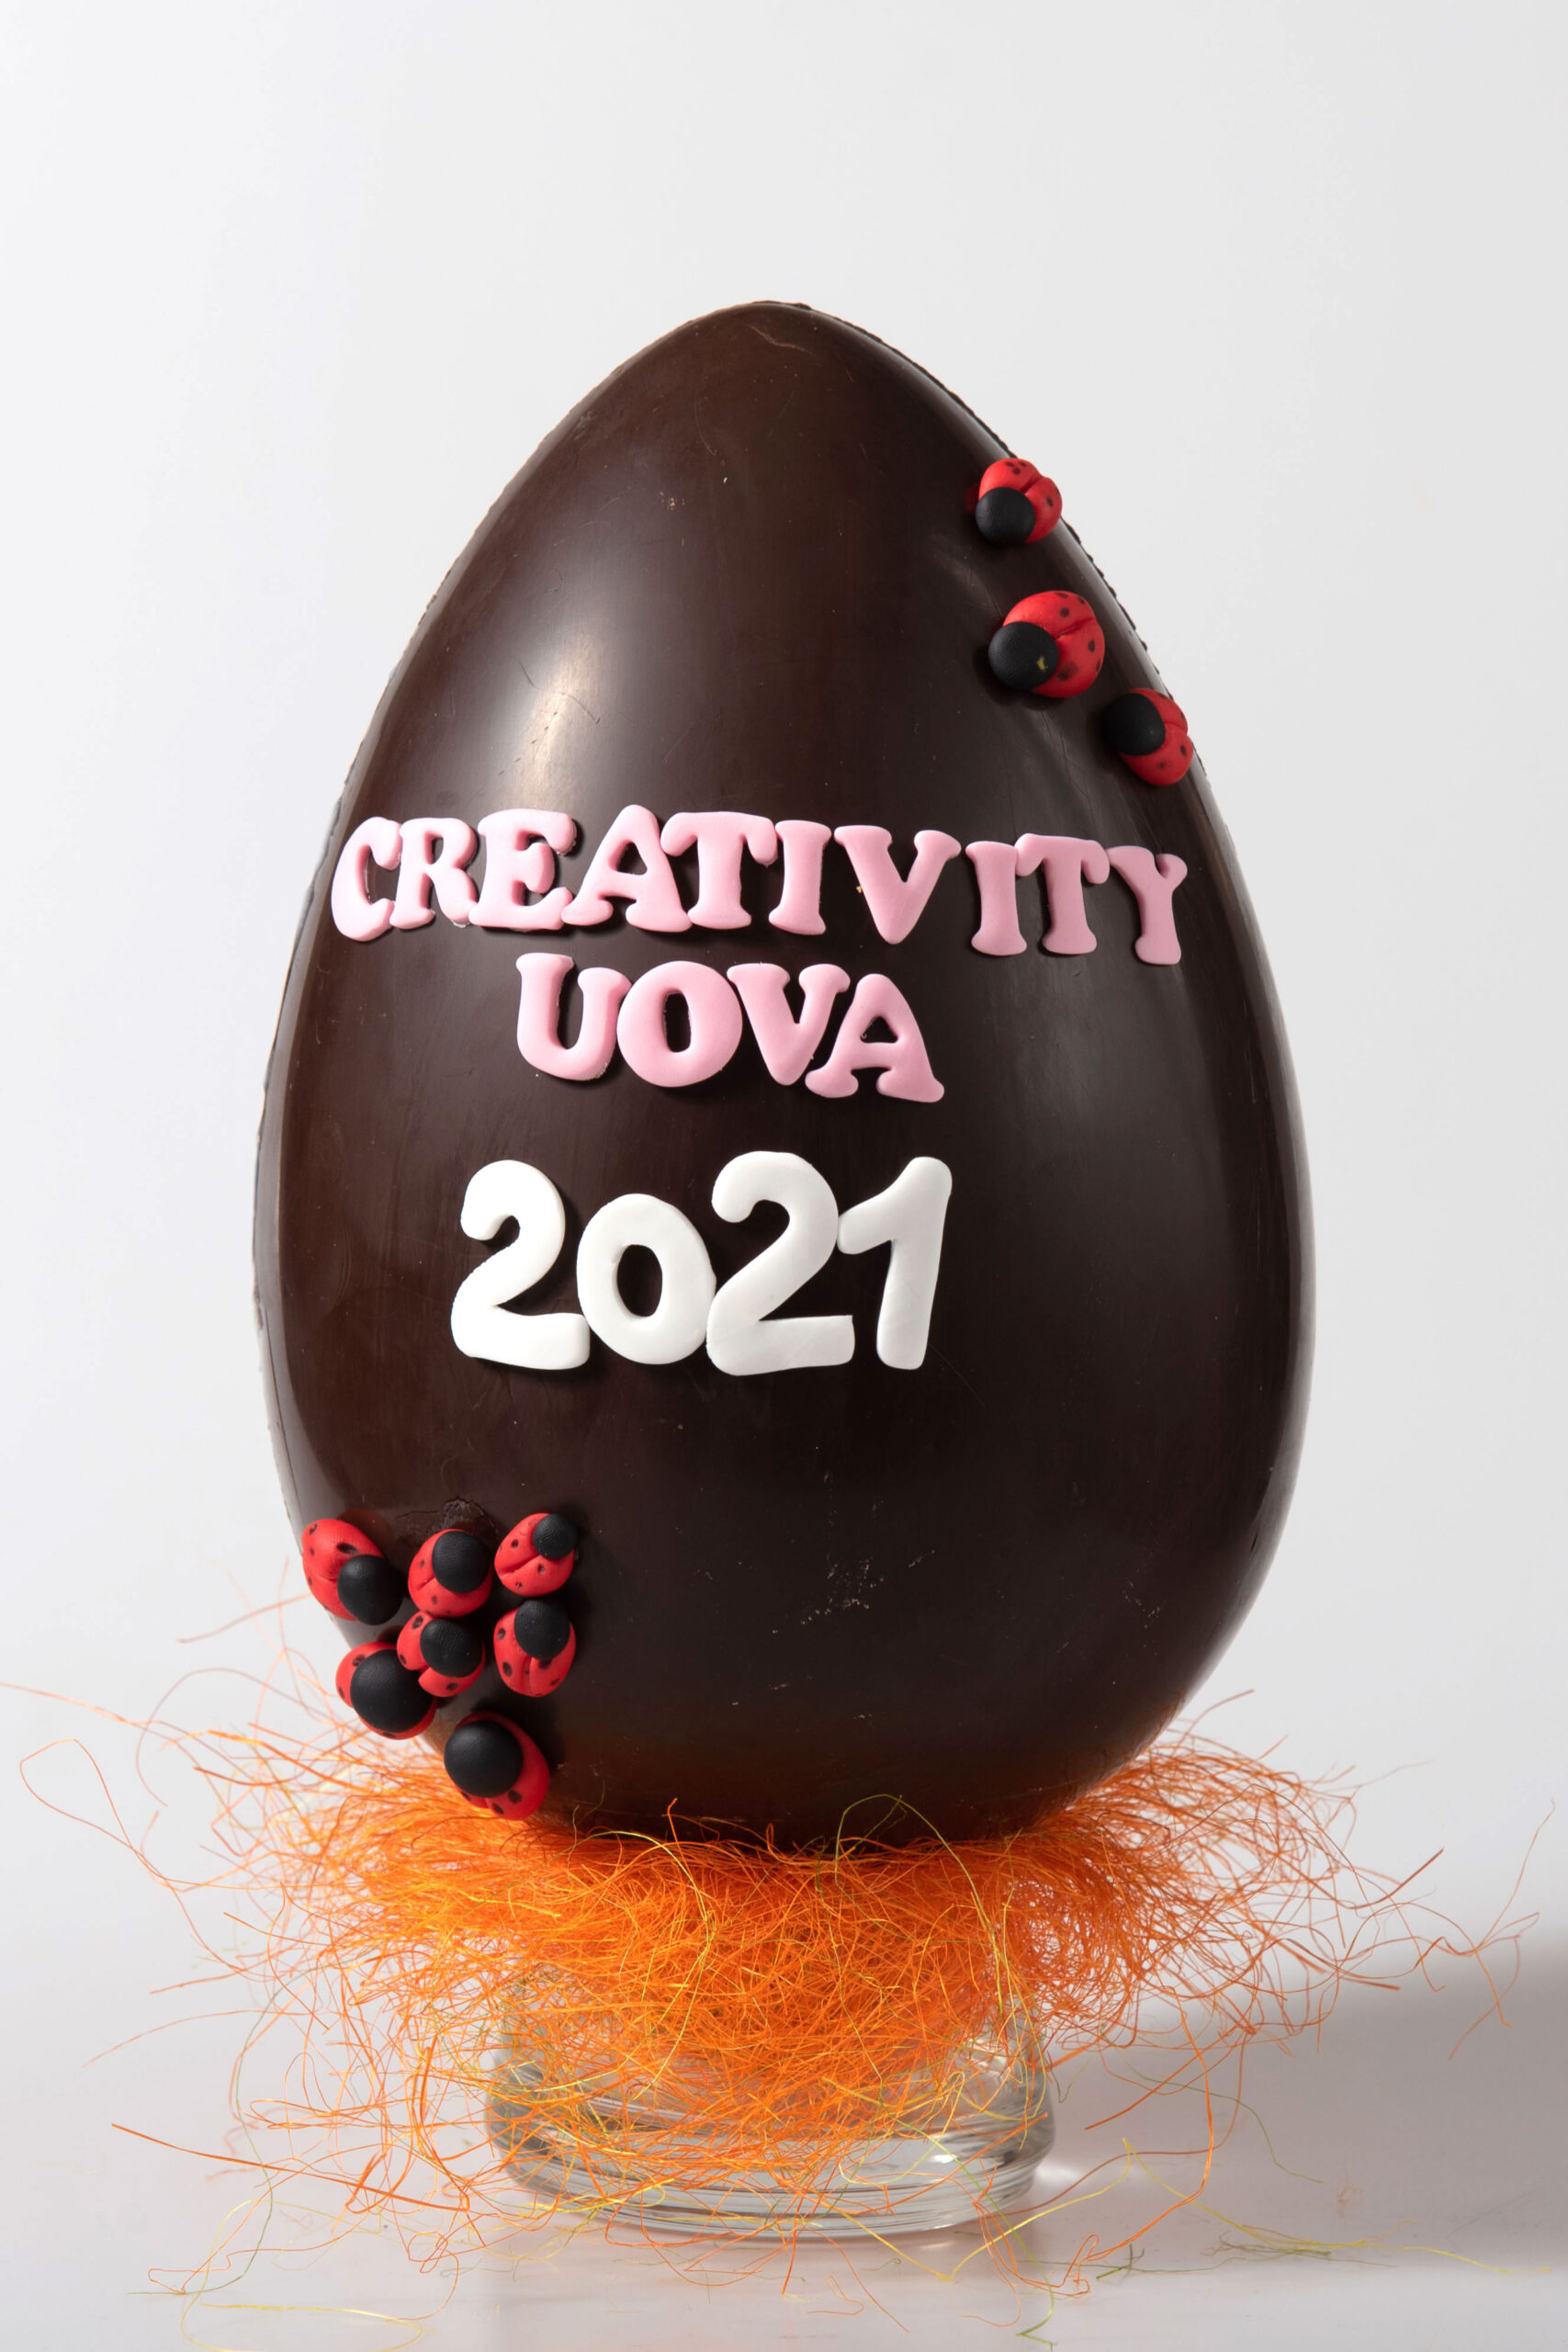 Creativity Uova. Una Pasqua ricordando gli anniversari passati alla storia del costume